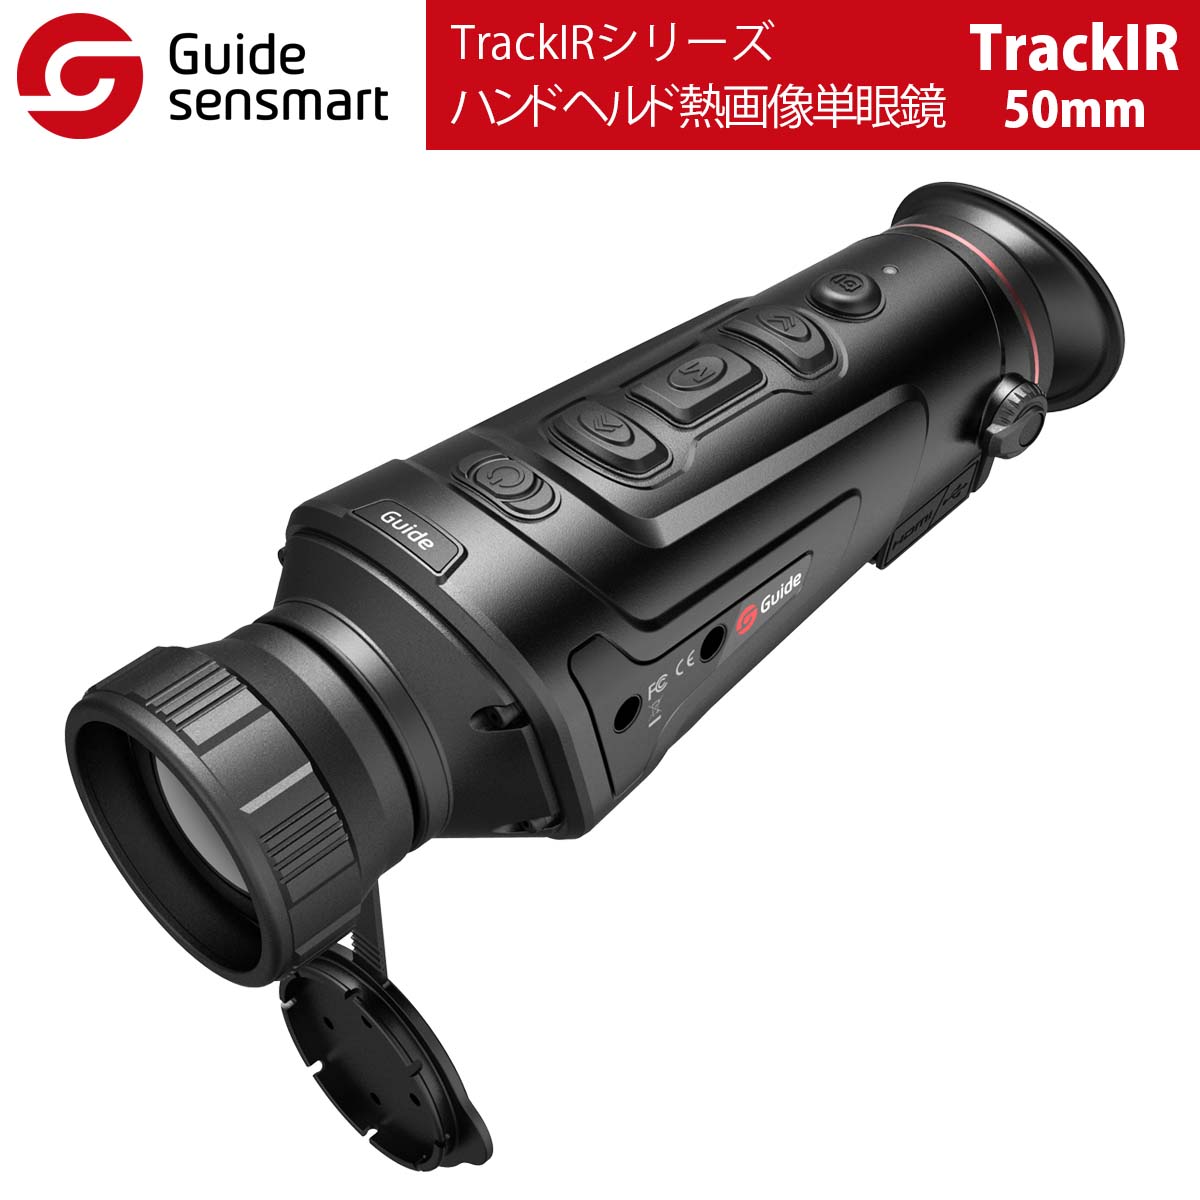 Guide sensmart【メーカー正規品】 ハンドヘルド熱画像単眼鏡 TrackIR-50mm（TrackIRシリーズ）自動電源オフ 光漏れ防止 超無音ボタン ノイズレスシャッターキャリブレーション